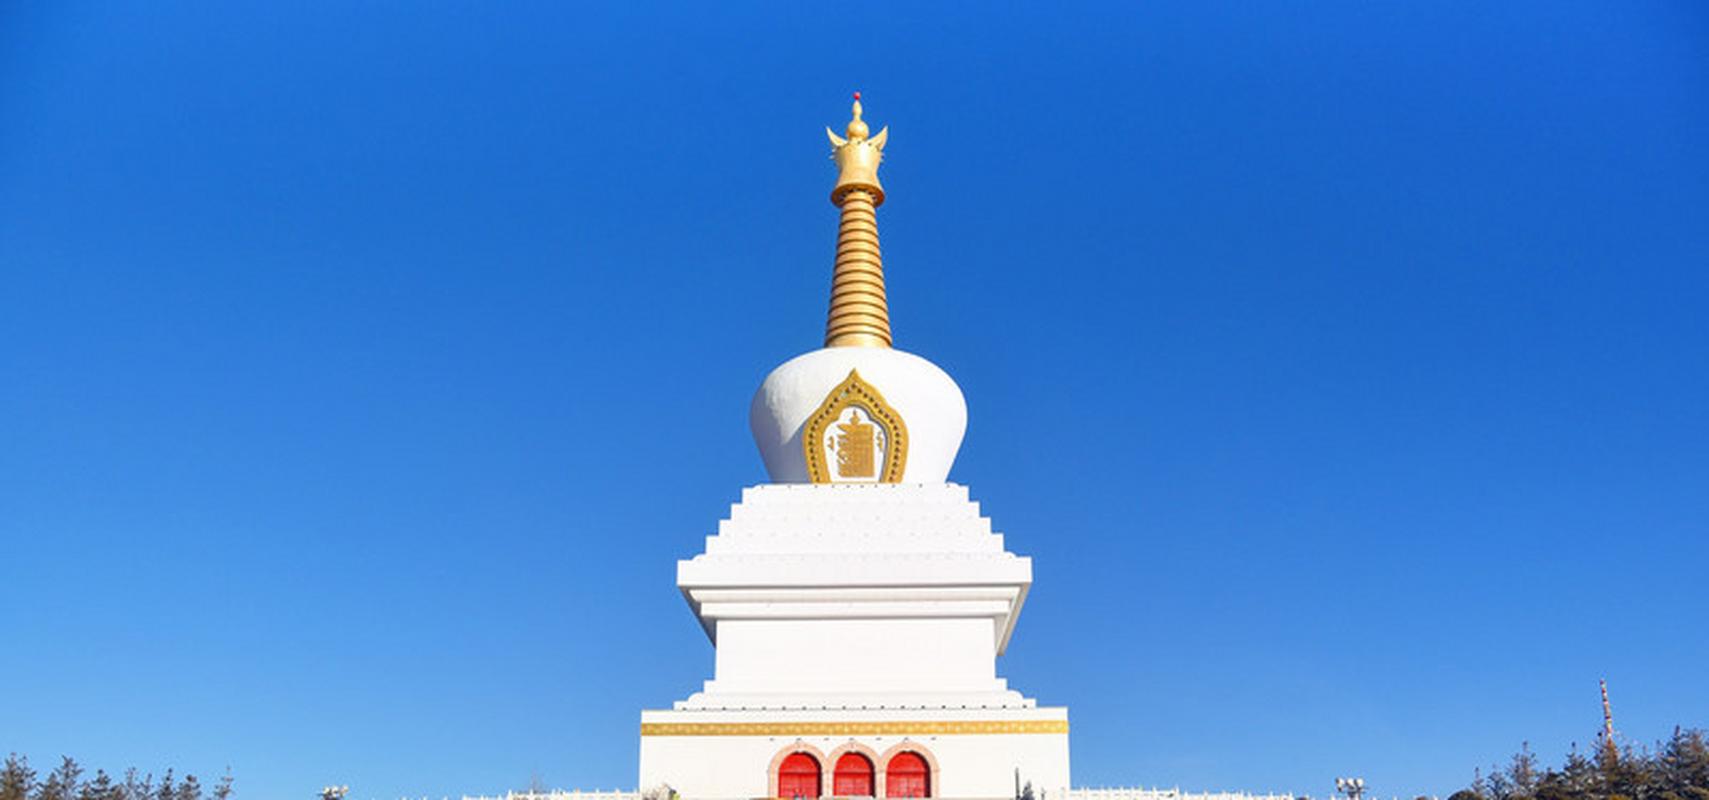 藏传佛寺"达尔吉林"其实是藏语名字,翻译过来就是昌盛寺寺院,说是藏式